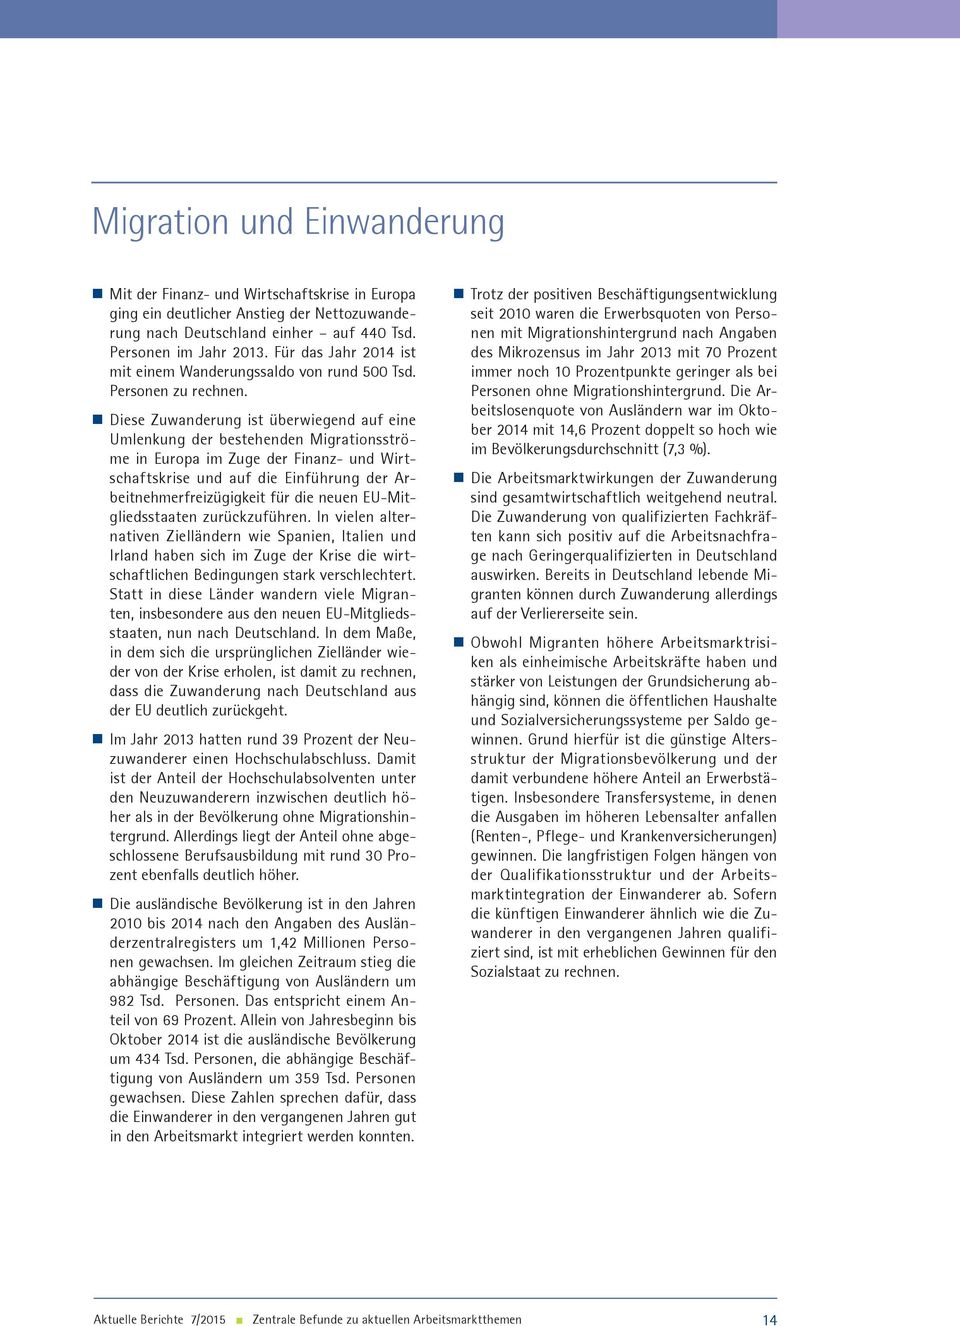 Diese Zuwanderung ist überwiegend auf eine Umlenkung der bestehenden Migrationsströme in Europa im Zuge der Finanz- und Wirtschaftskrise und auf die Einführung der Arbeitnehmerfreizügigkeit für die